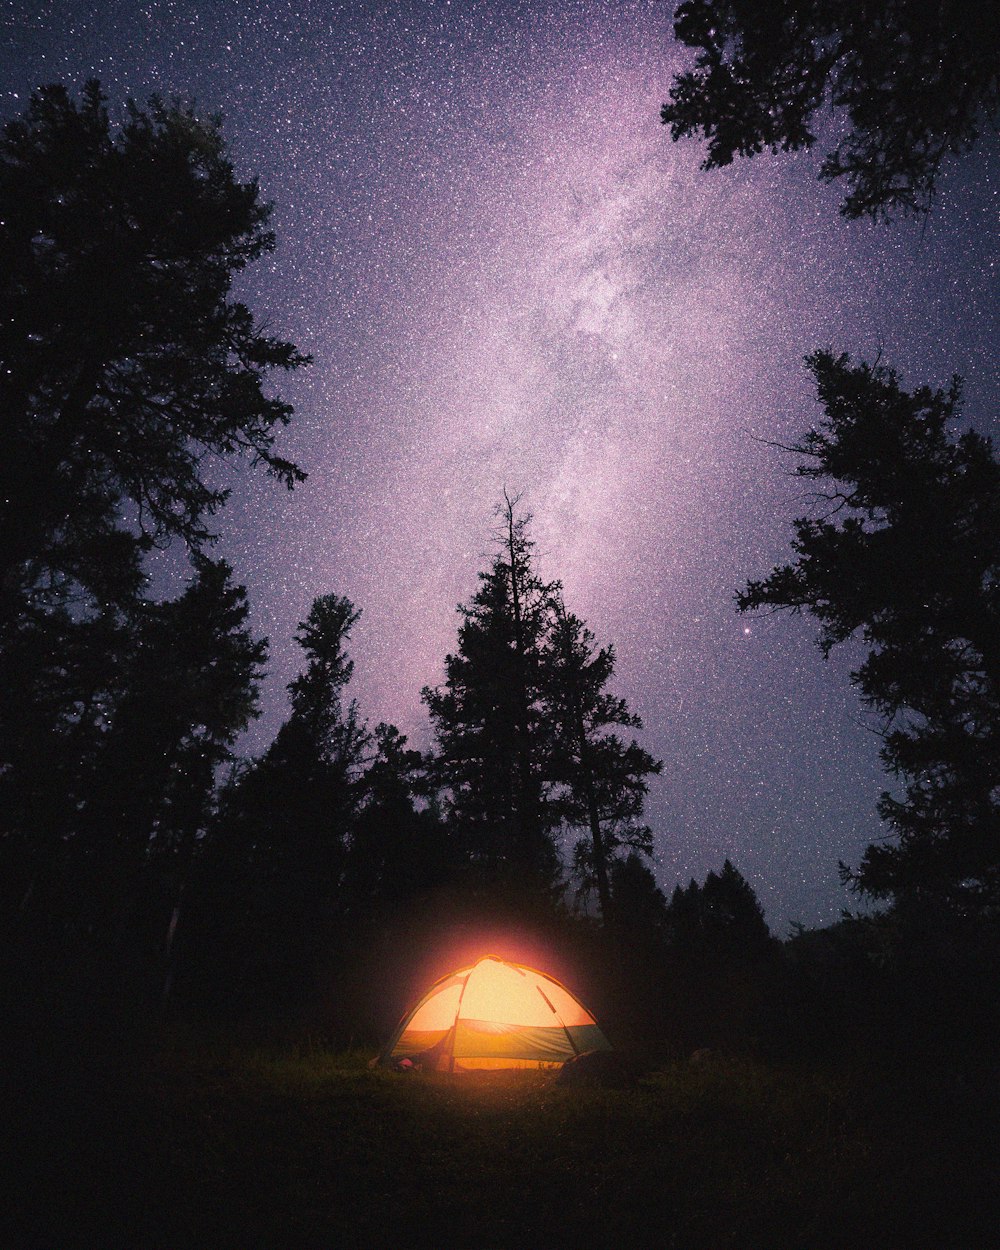 별이 가득한 밤하늘 아래 숲 속의 텐트